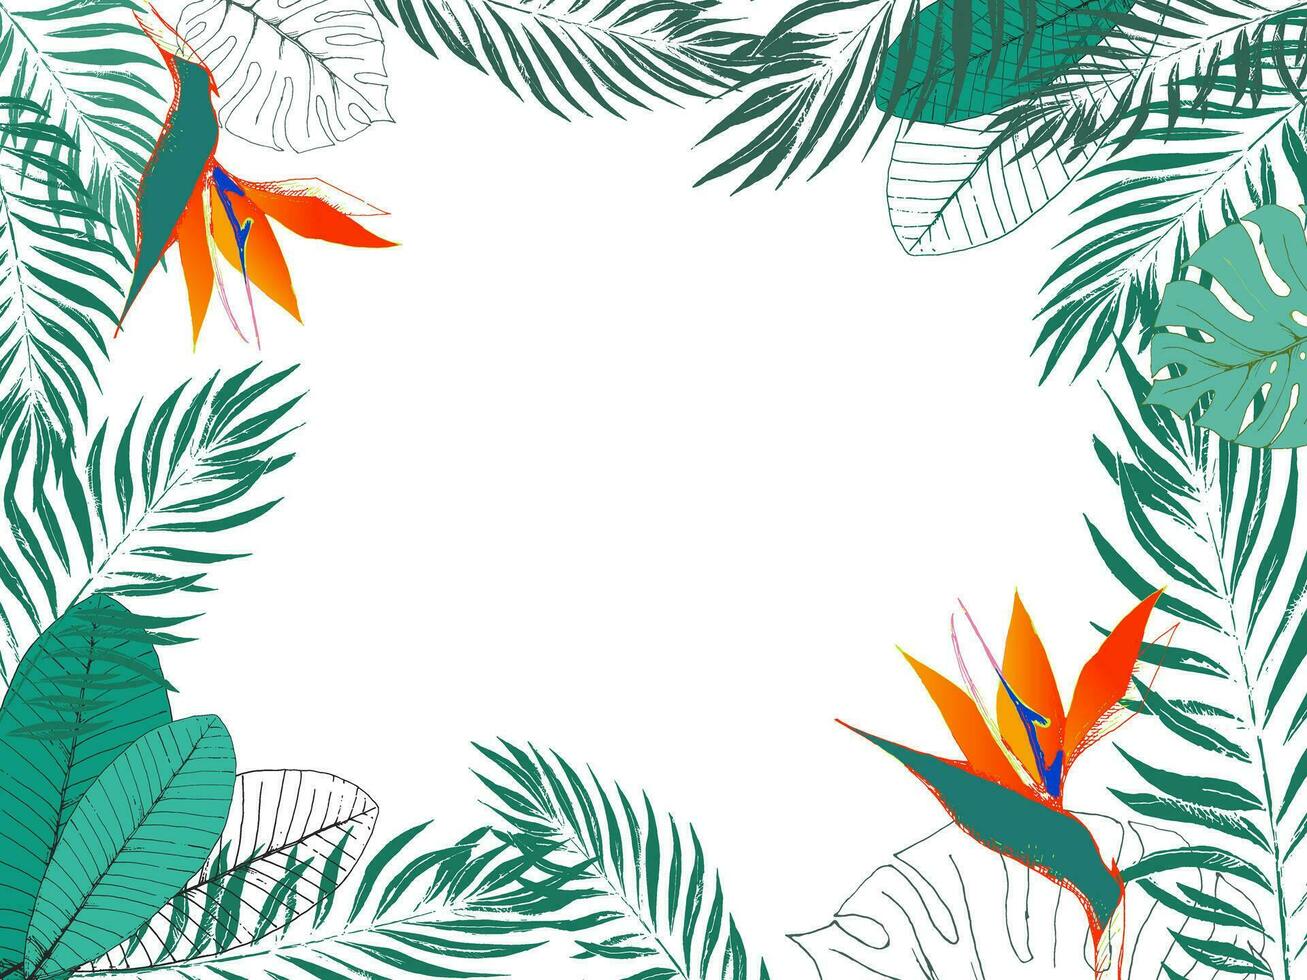 eco tropical modelo con sitio para texto. selva exótico marco de Strelitzia flores, palma hojas, monstera hojas, frangipani eps8 vector ilustración